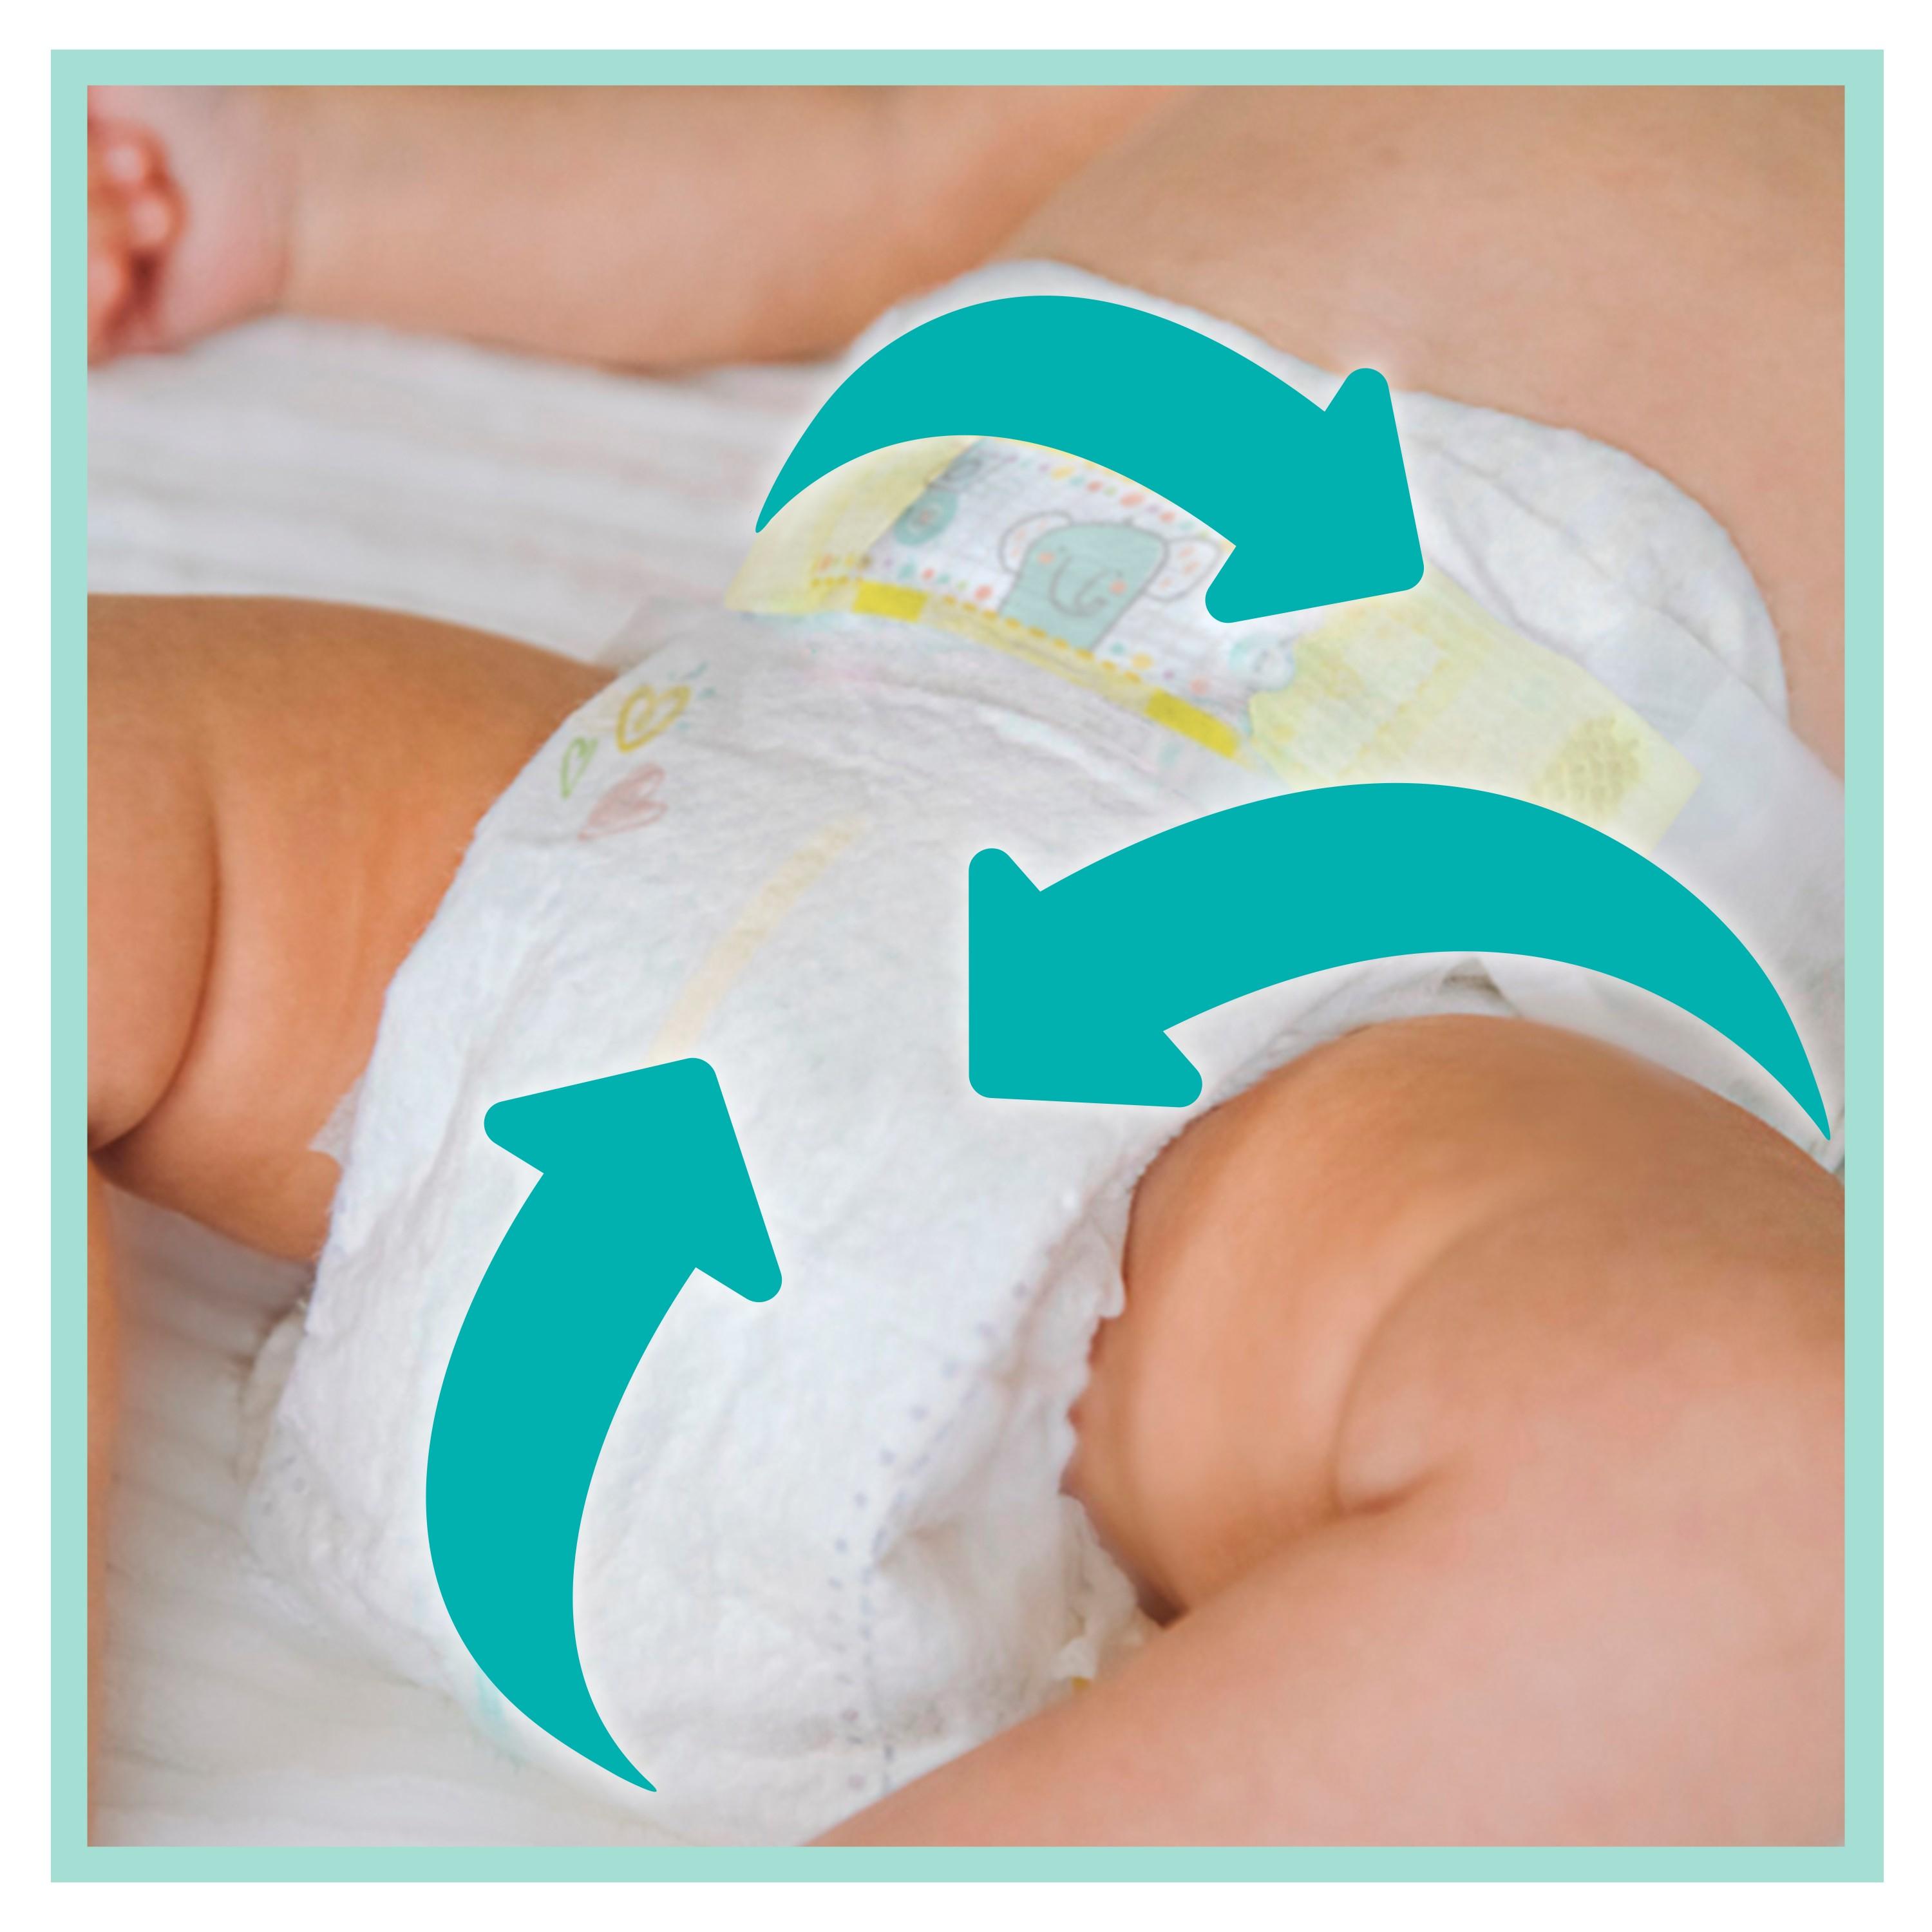 Diapers Pampers Premium Care Junior 5 58 pc(s)